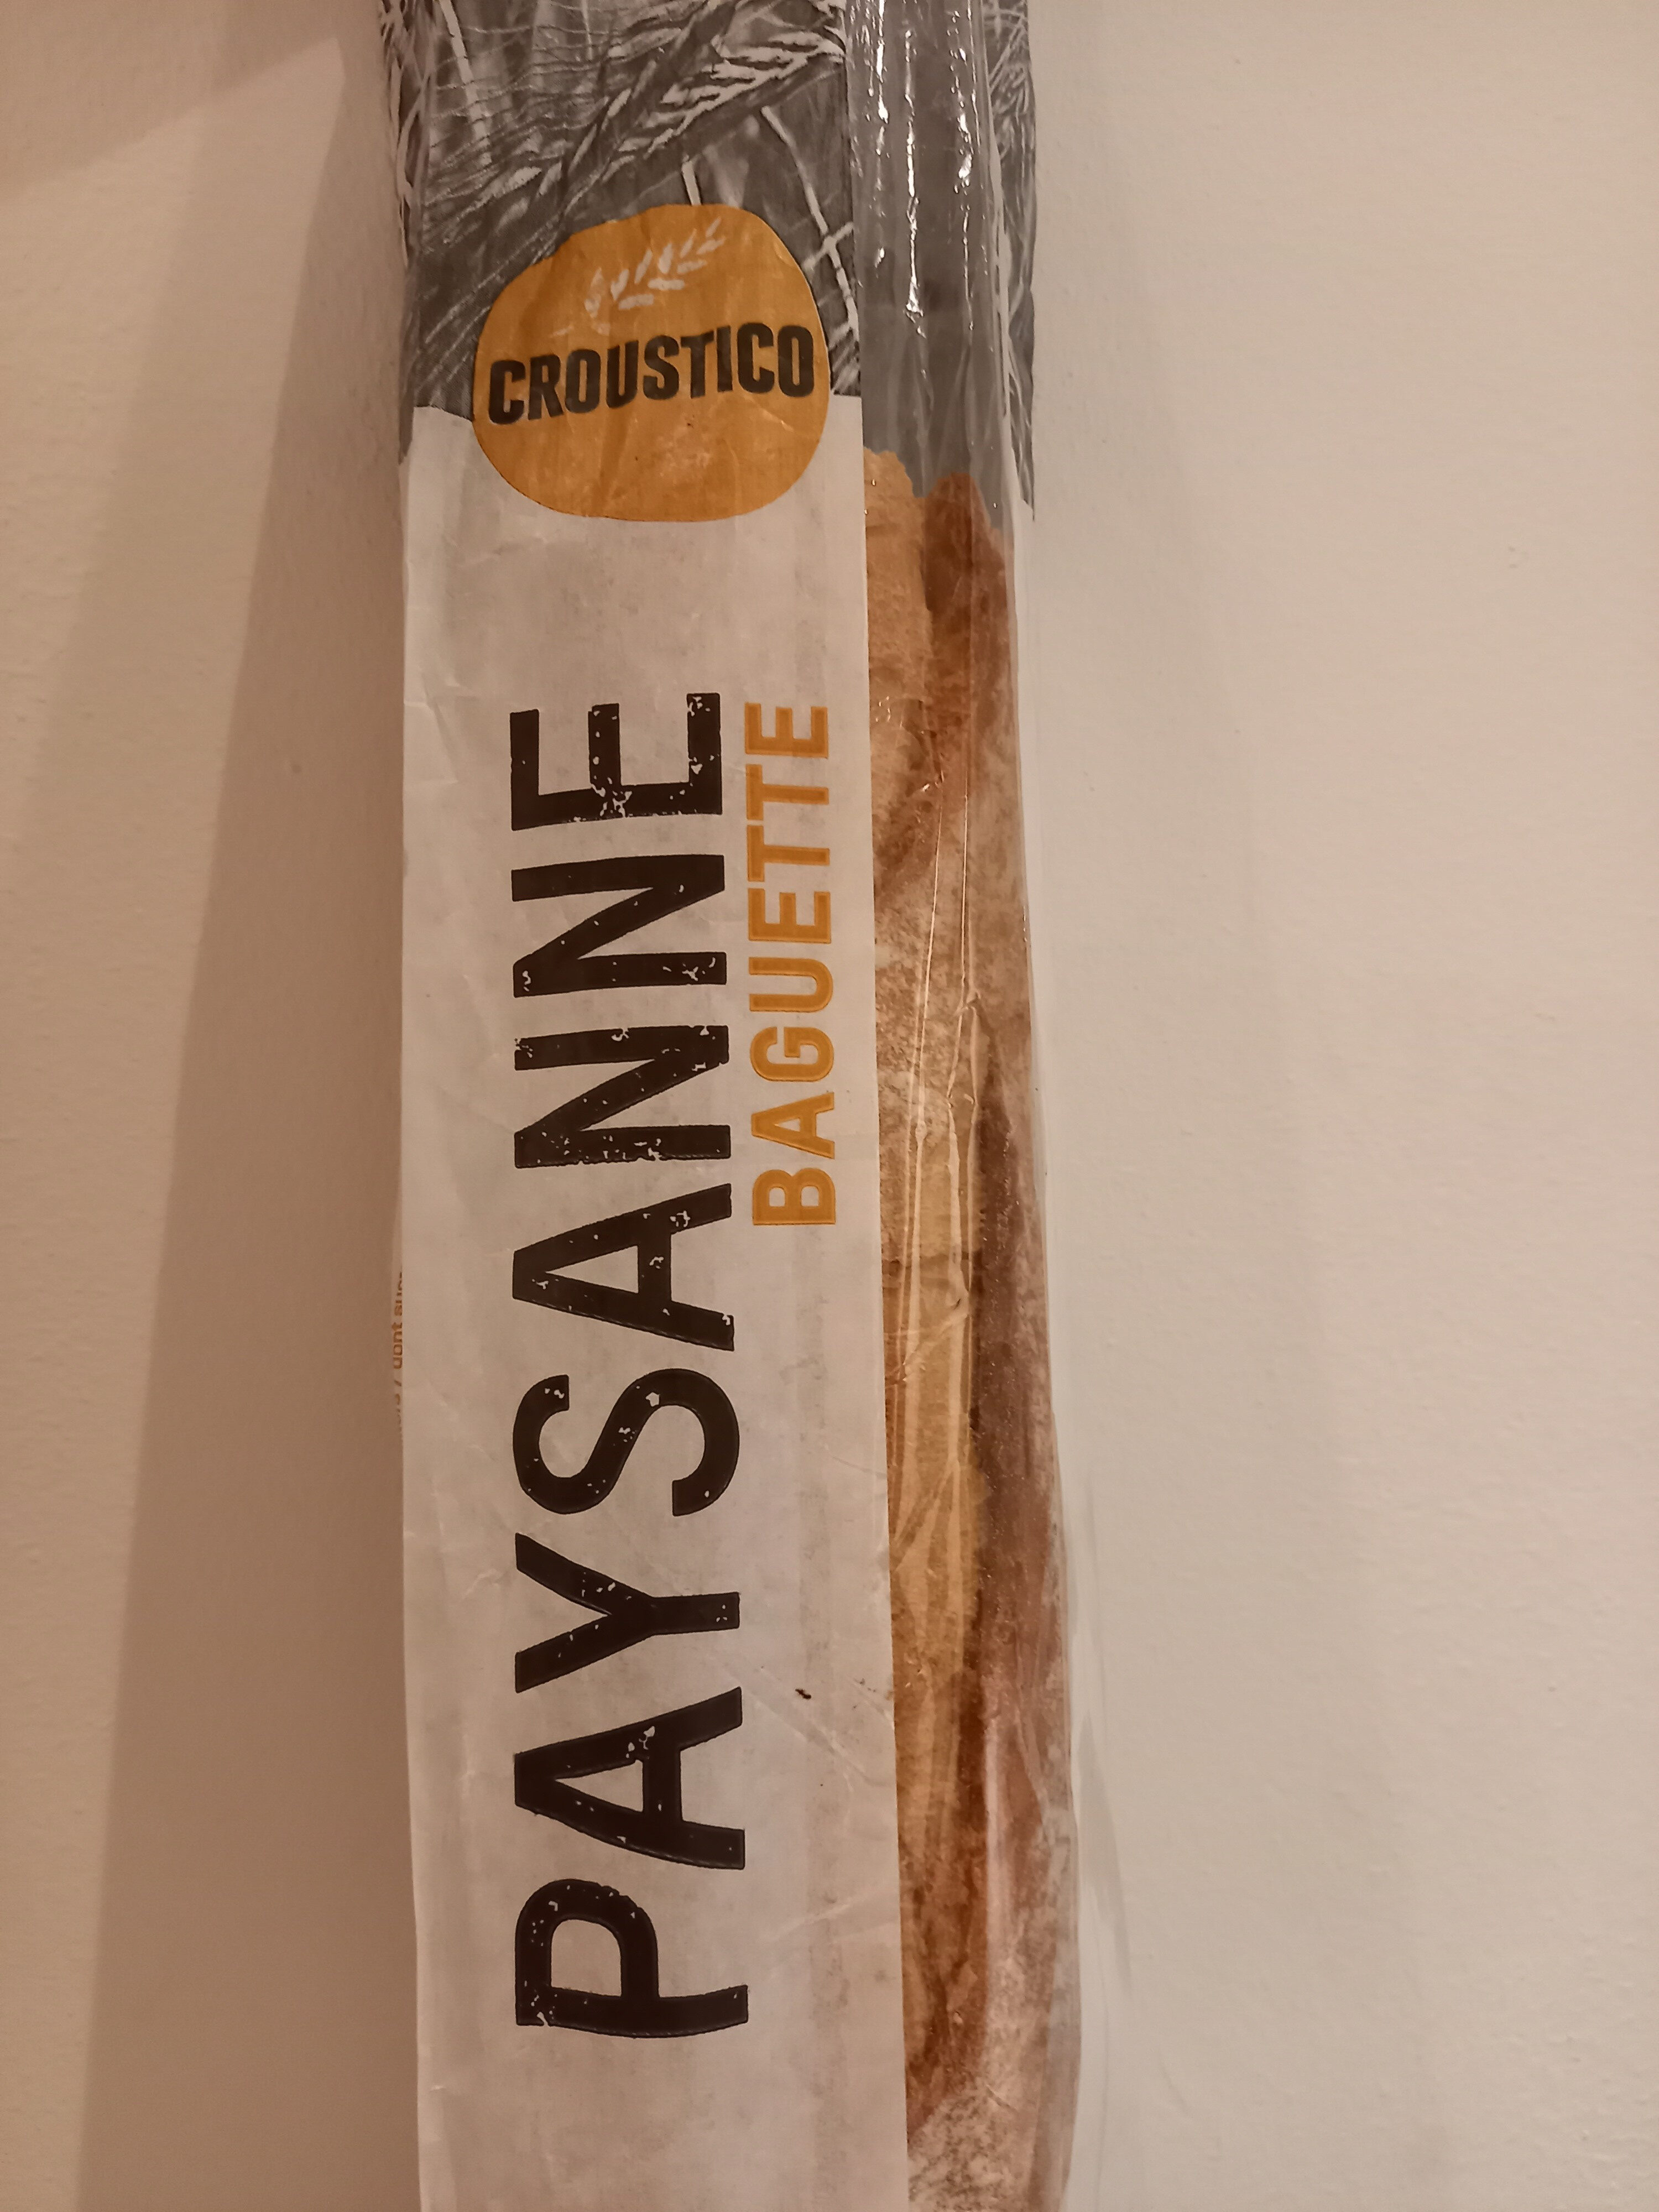 Baguette Paysanne - Product